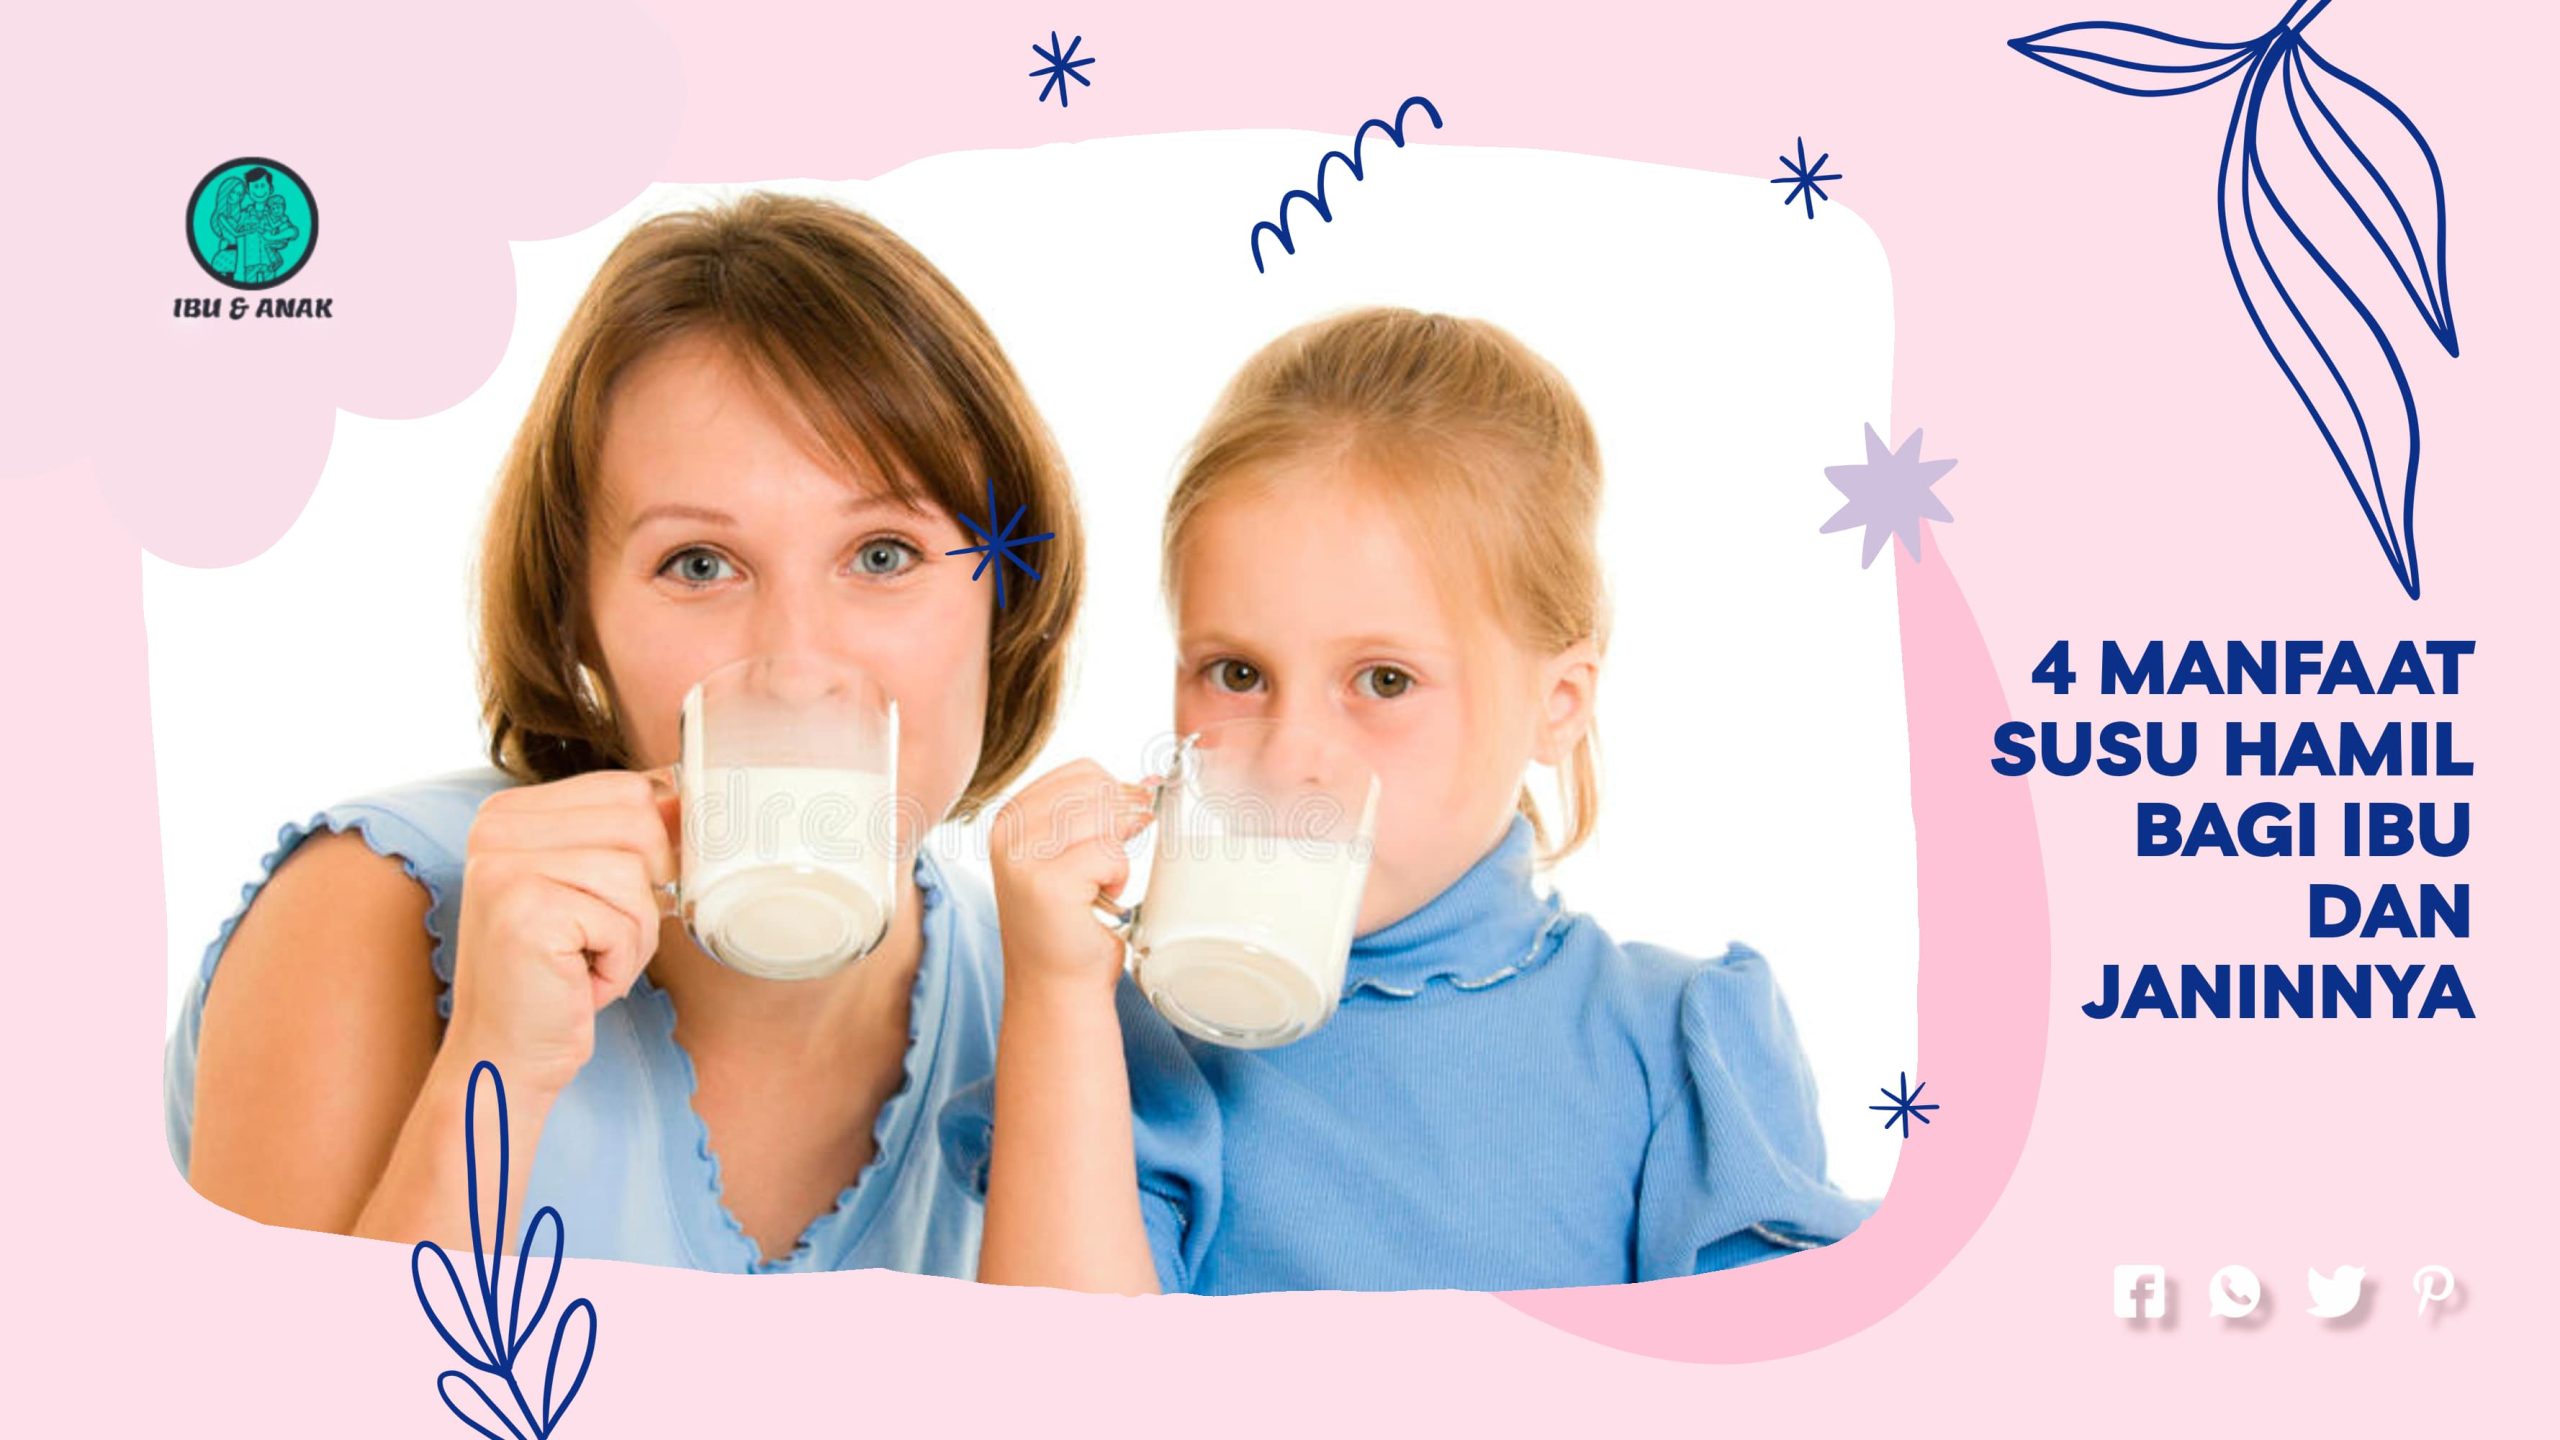 4 Manfaat Susu Hamil bagi Ibu dan Janinnya